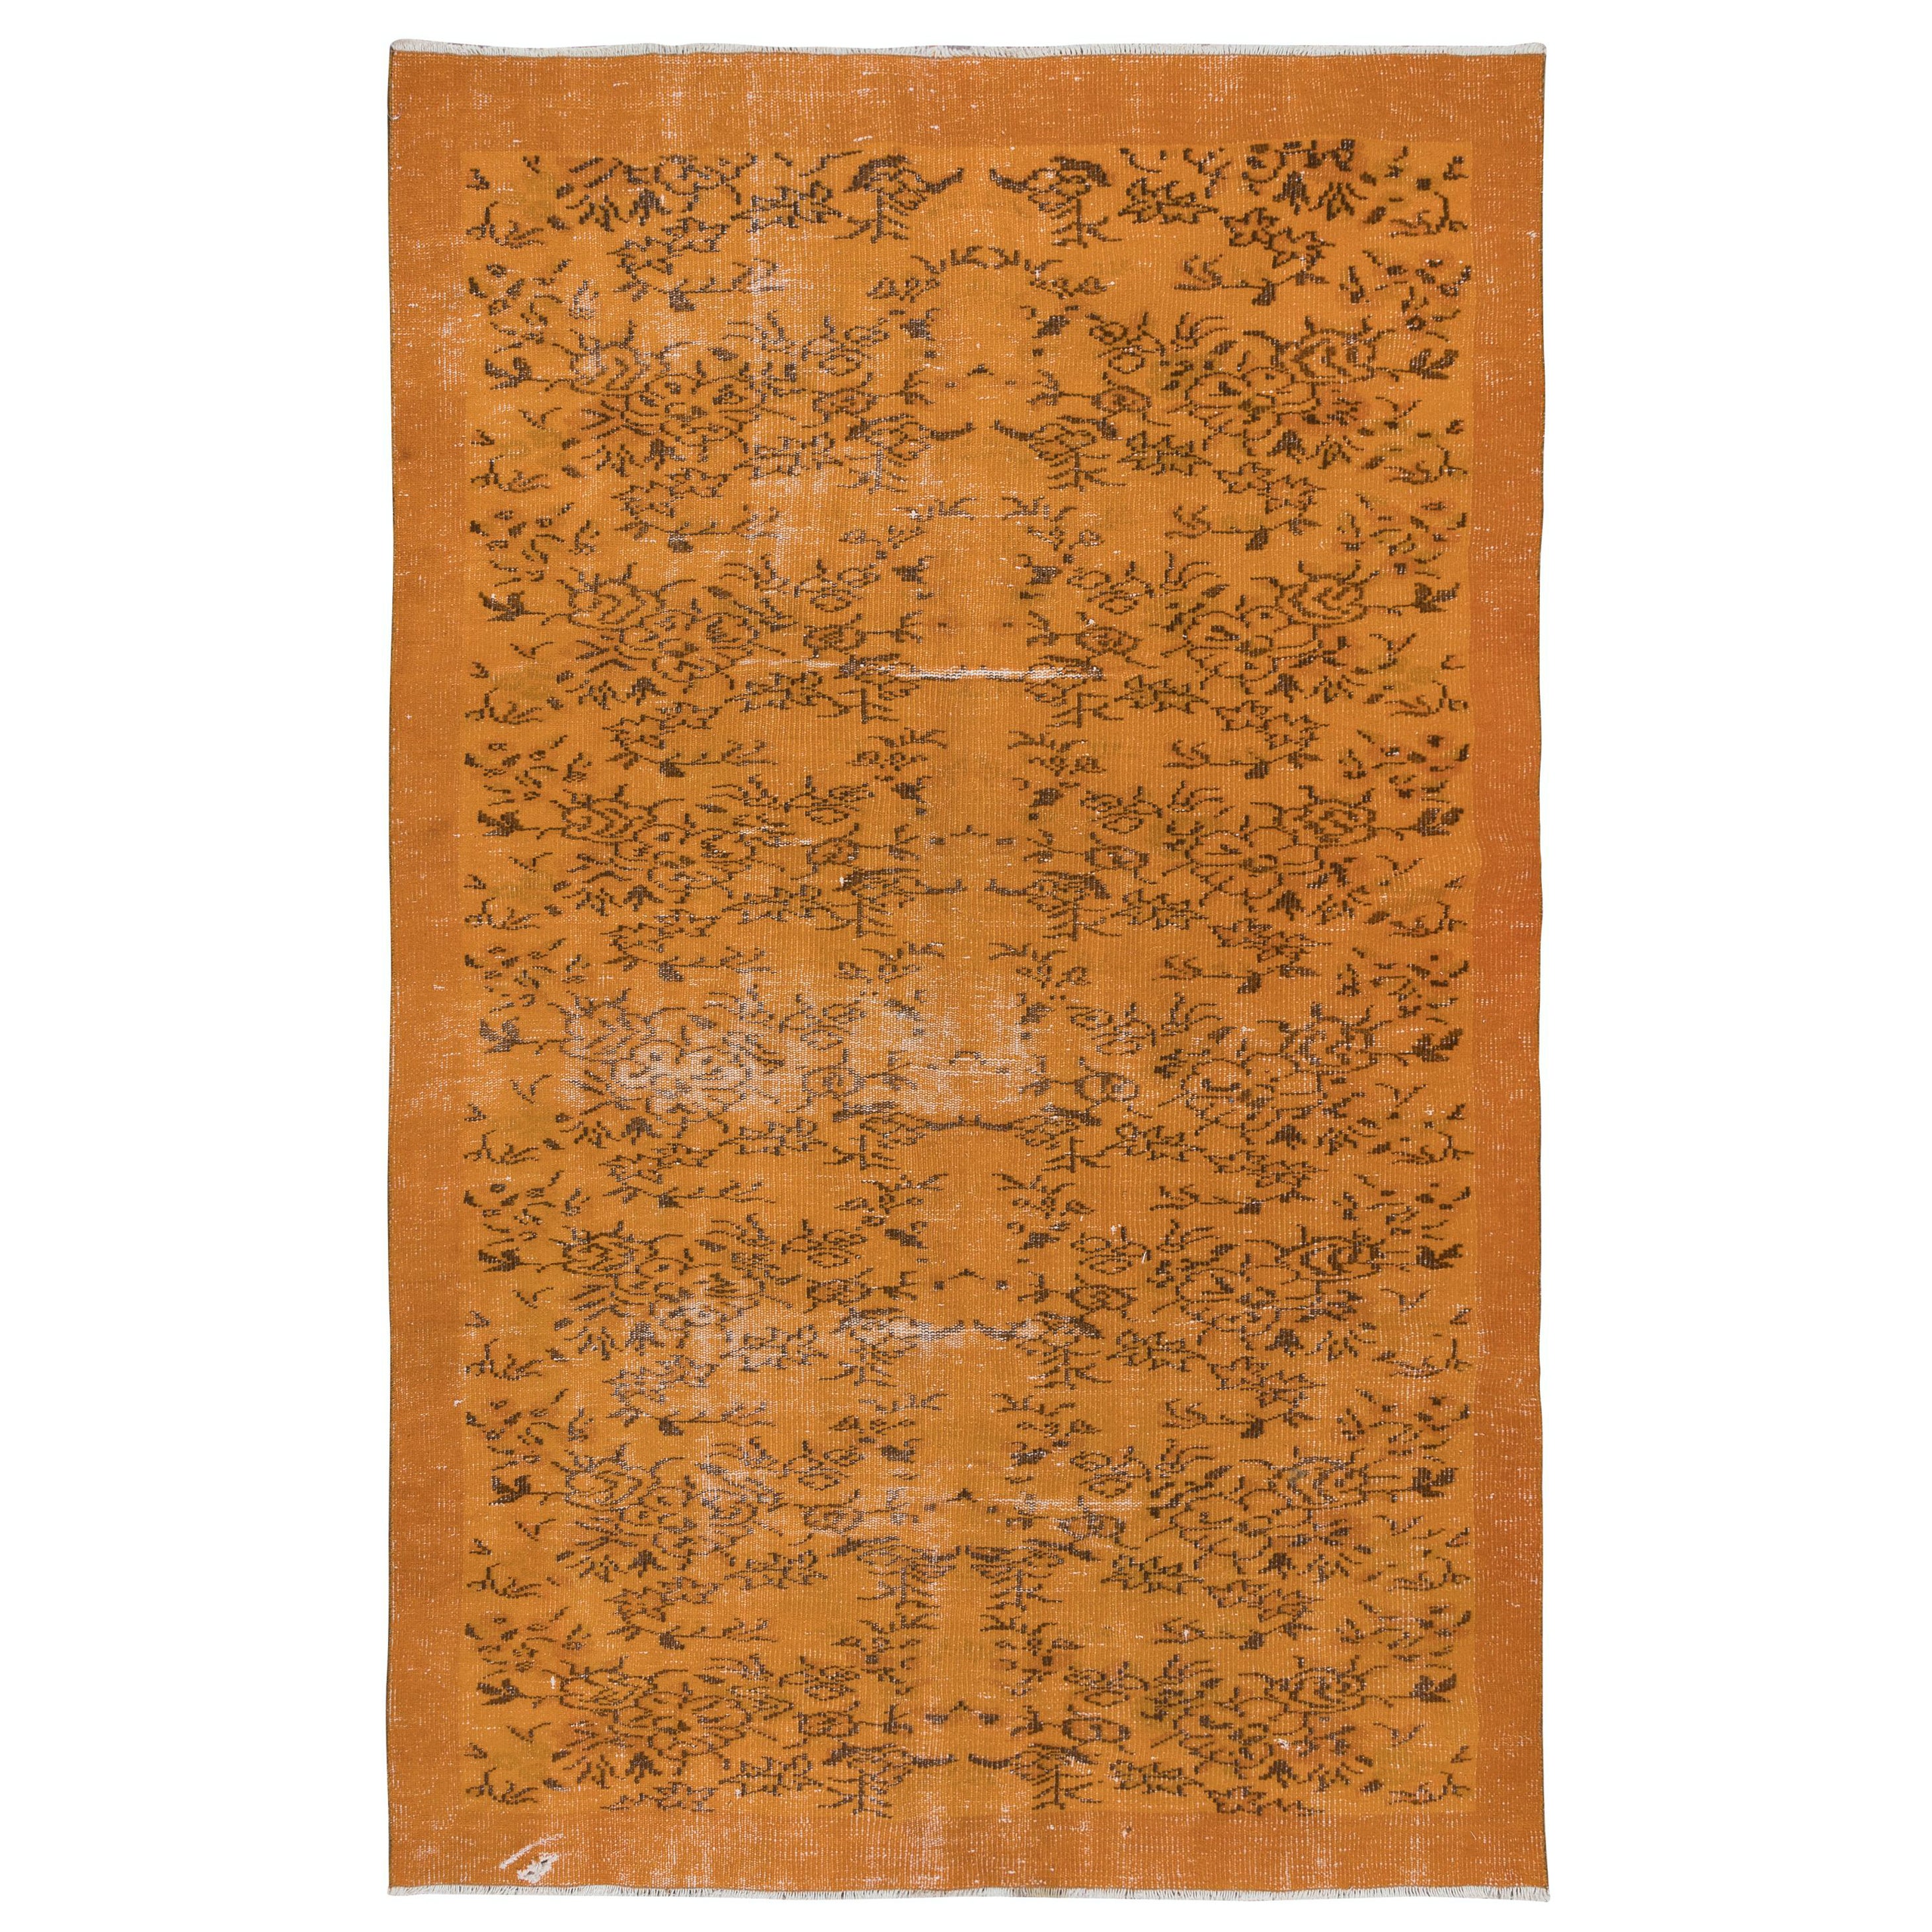 6x8.8 Ft Handmade Turkish Rug in Orange, Ideal for Modern Interiors (tapis turc fait main en orange, idéal pour les intérieurs modernes)